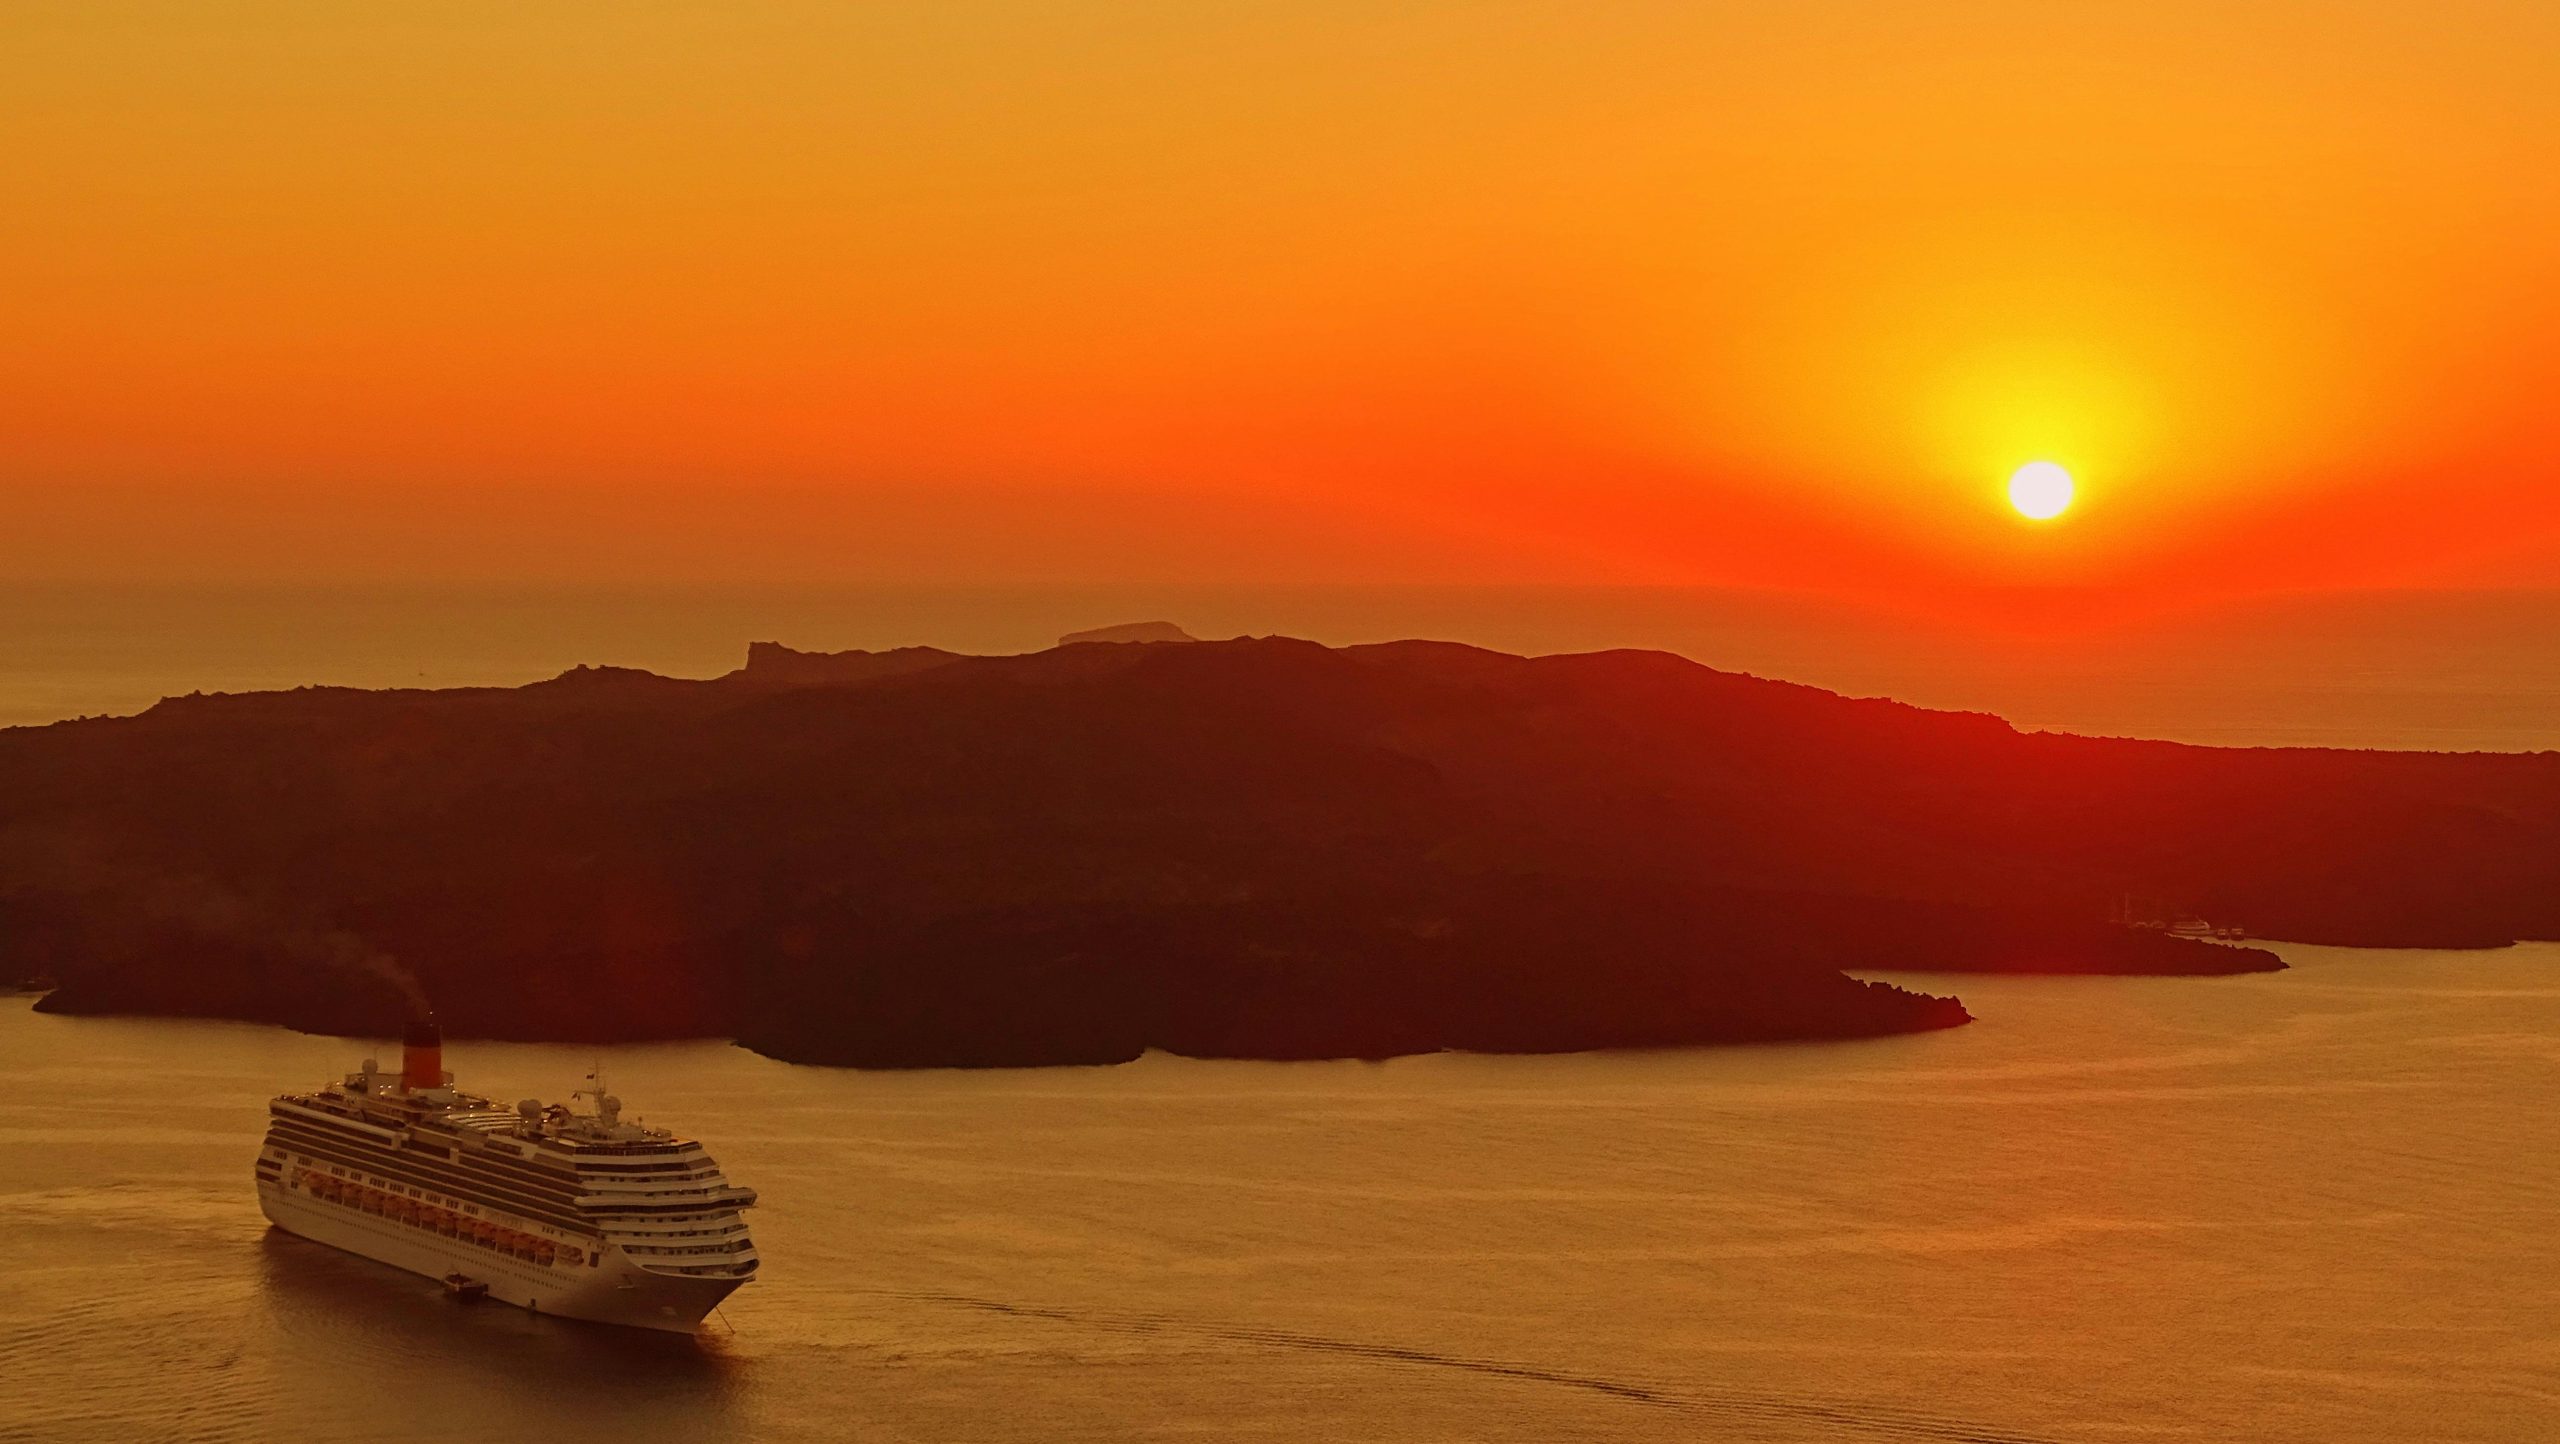 sunset-cruise